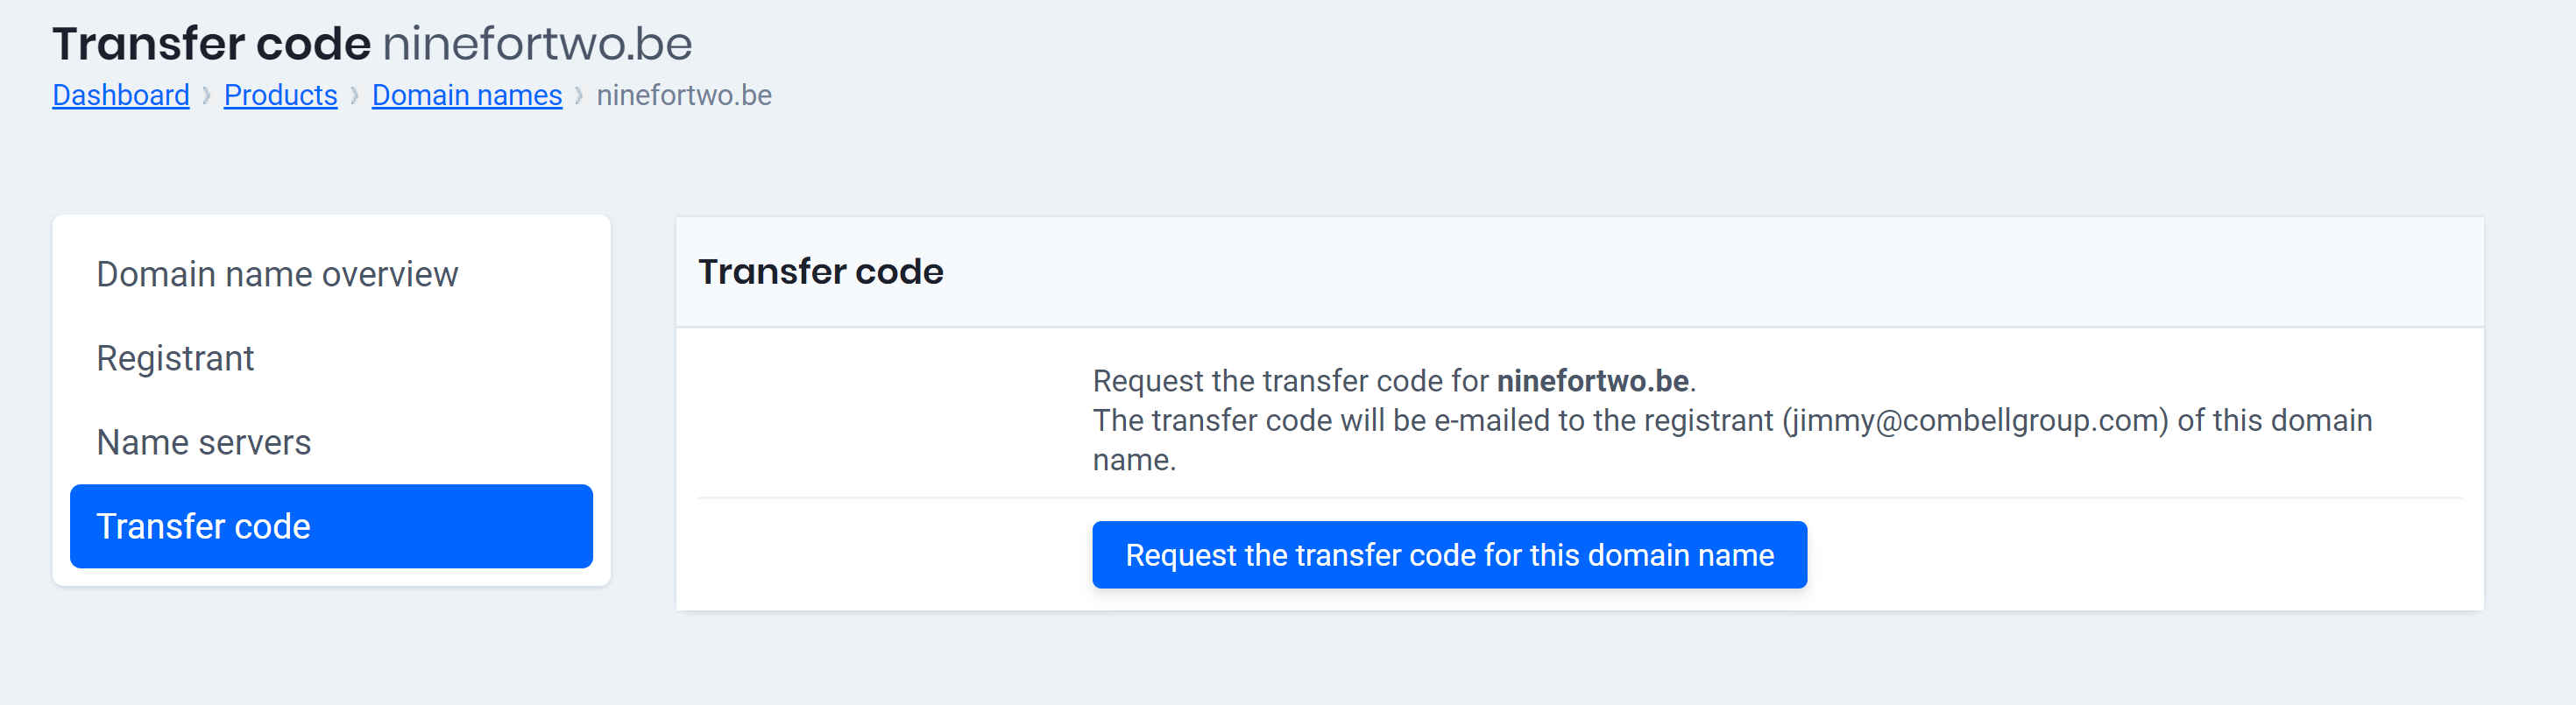 Request transfercode 